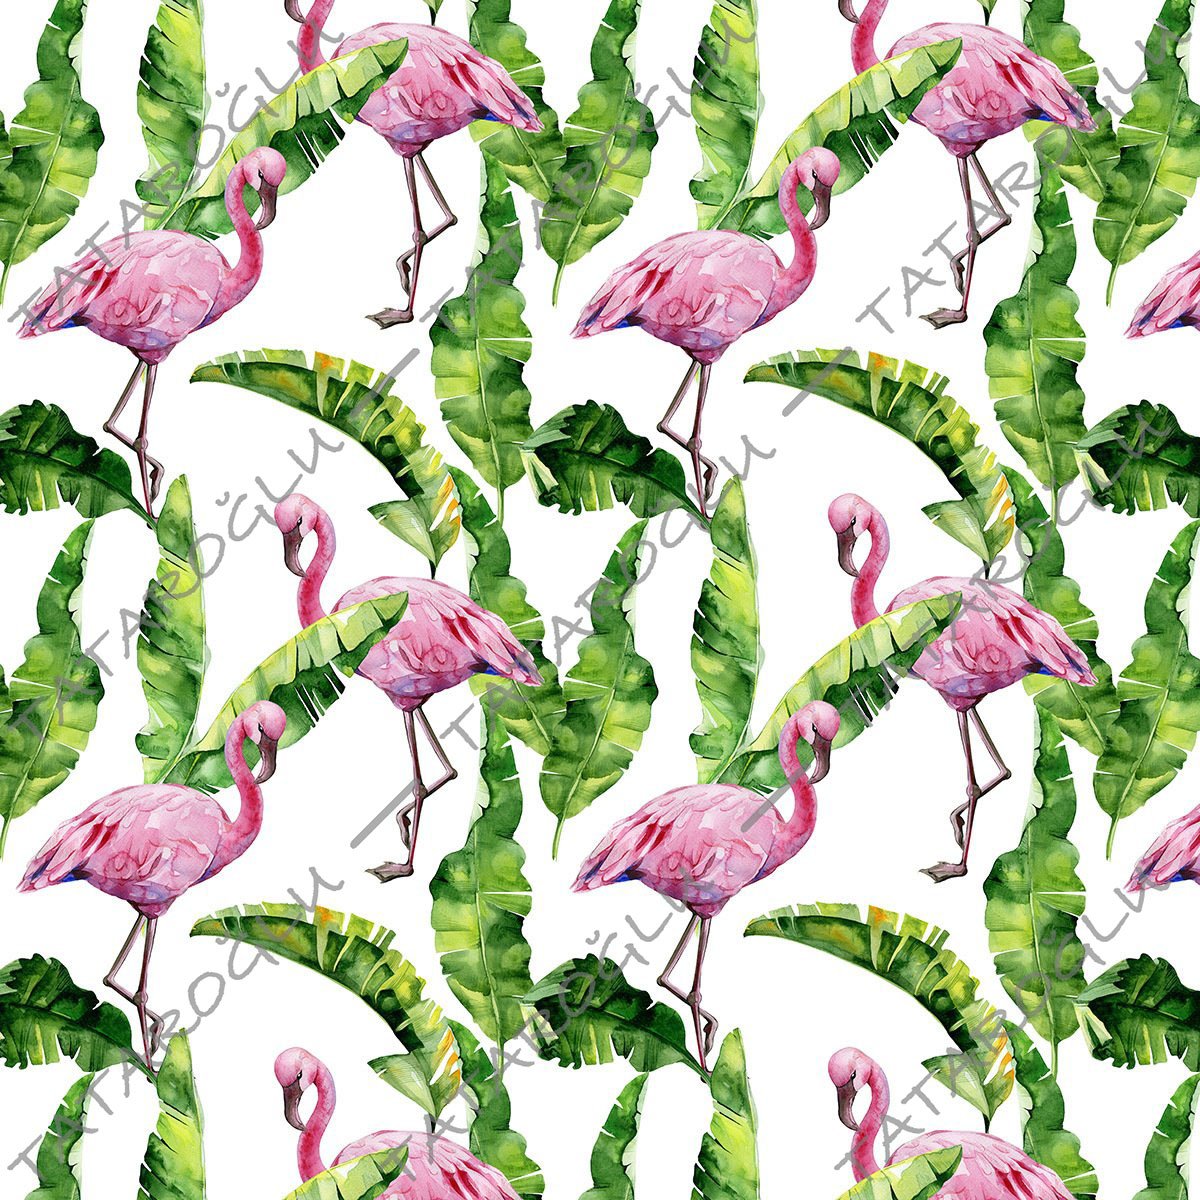 Tropikal Serisi-Beyaz Zemin Üzerine Yeşil Yapraklı Flamingo Dijital Baskı Kumaş